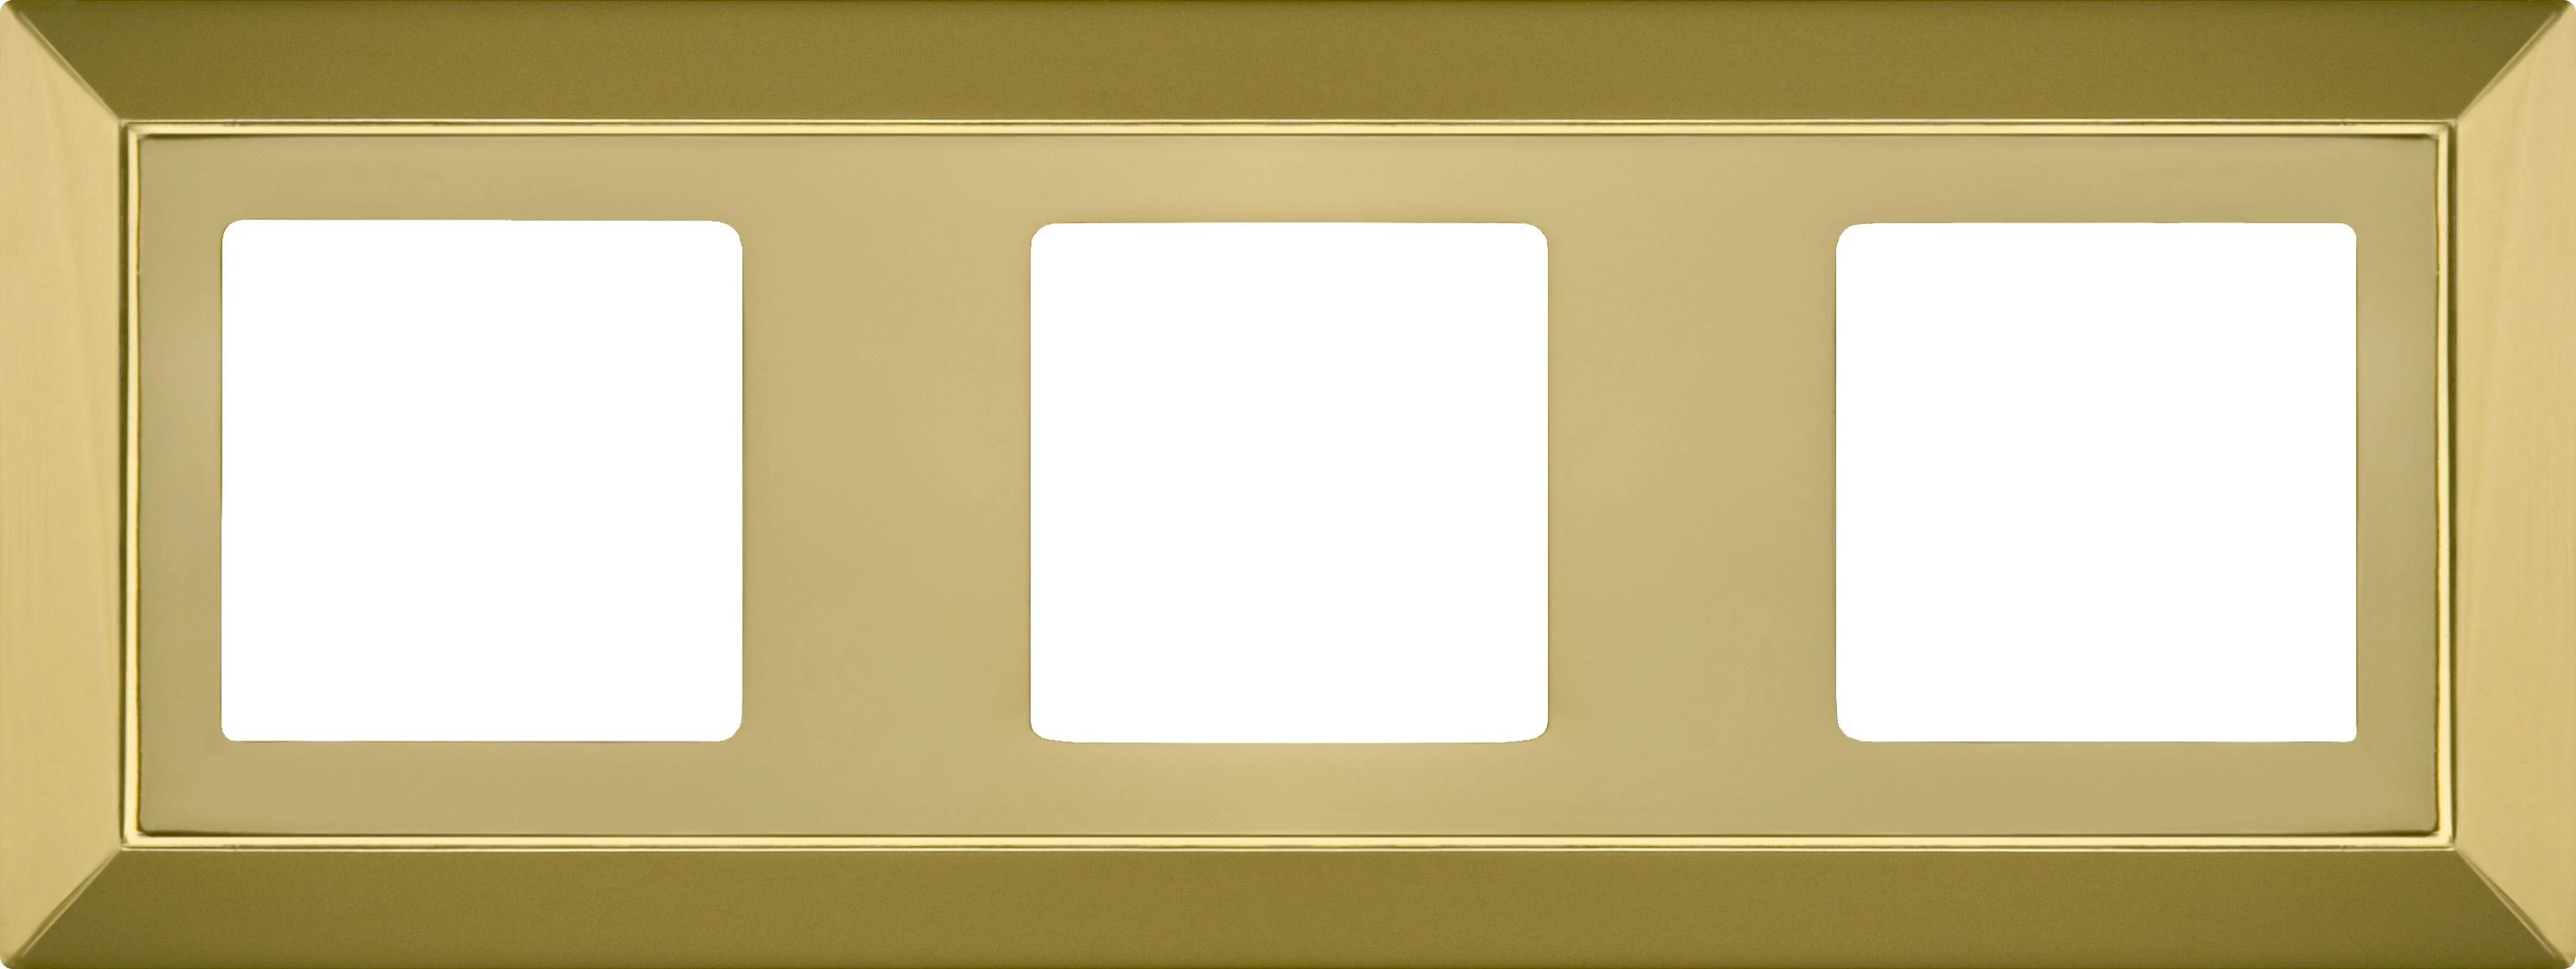  артикул FD01253OB название Рамка 3-ая (тройная), цвет Светлое золото, Barcelona, Fede